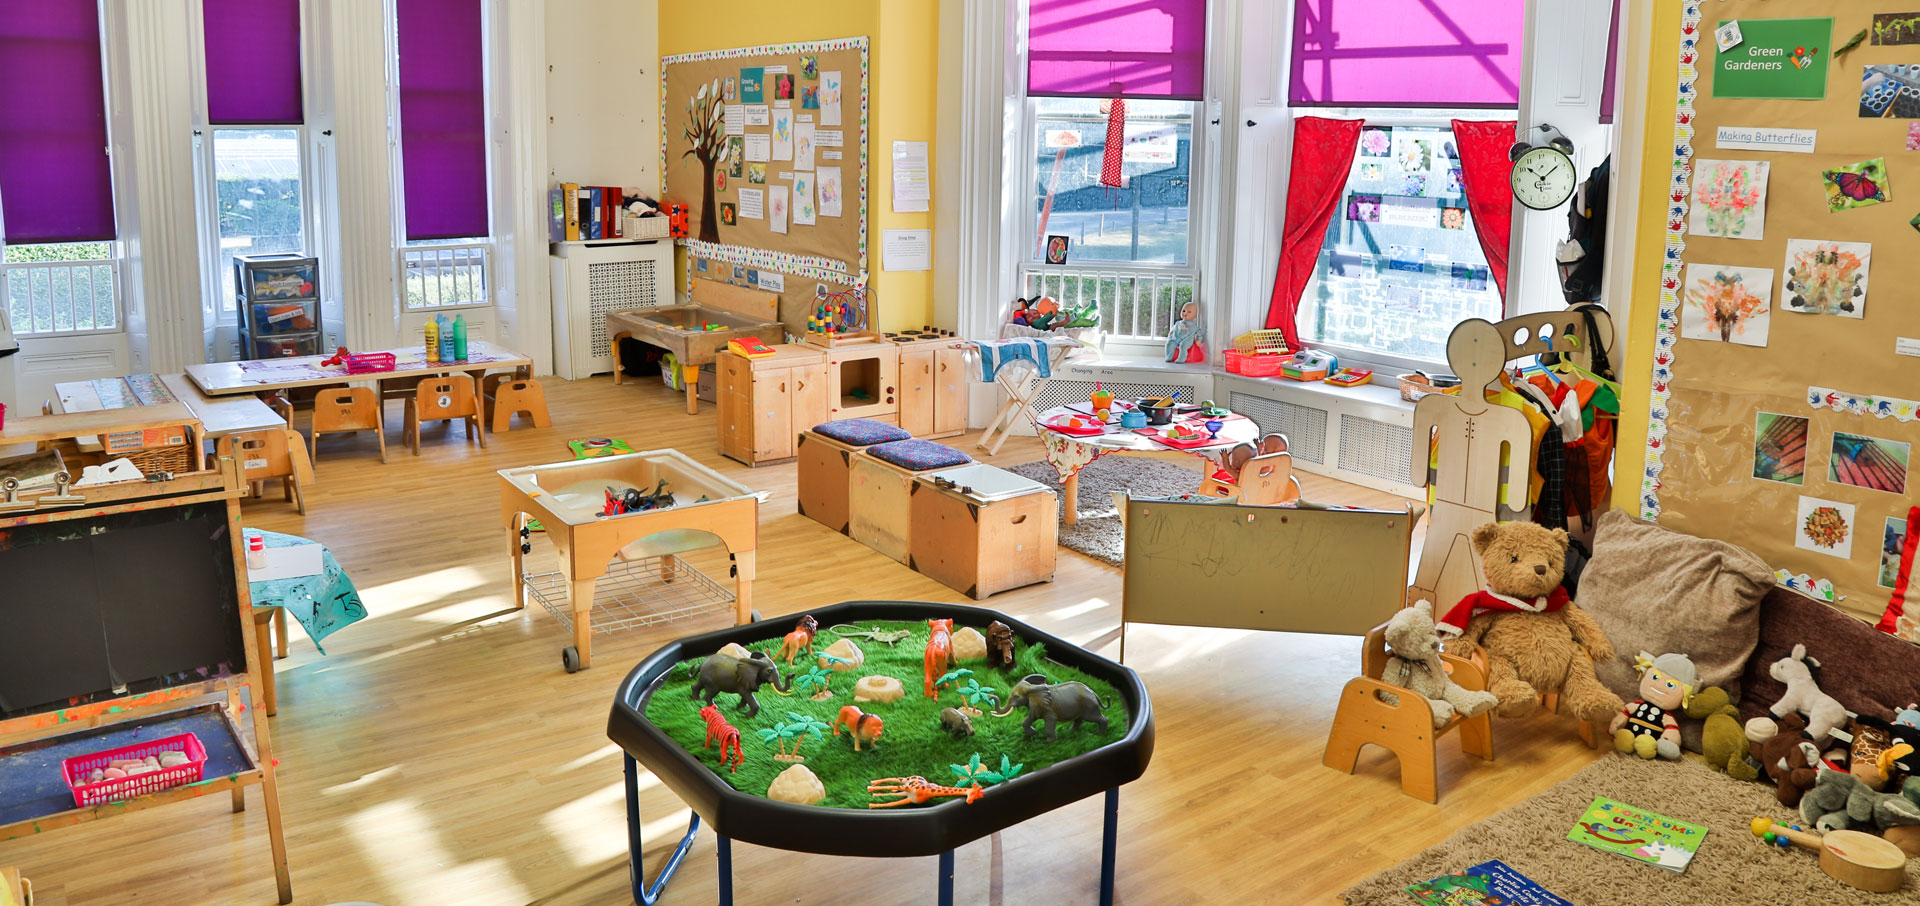 Mongewell Day Nursery and Preschool